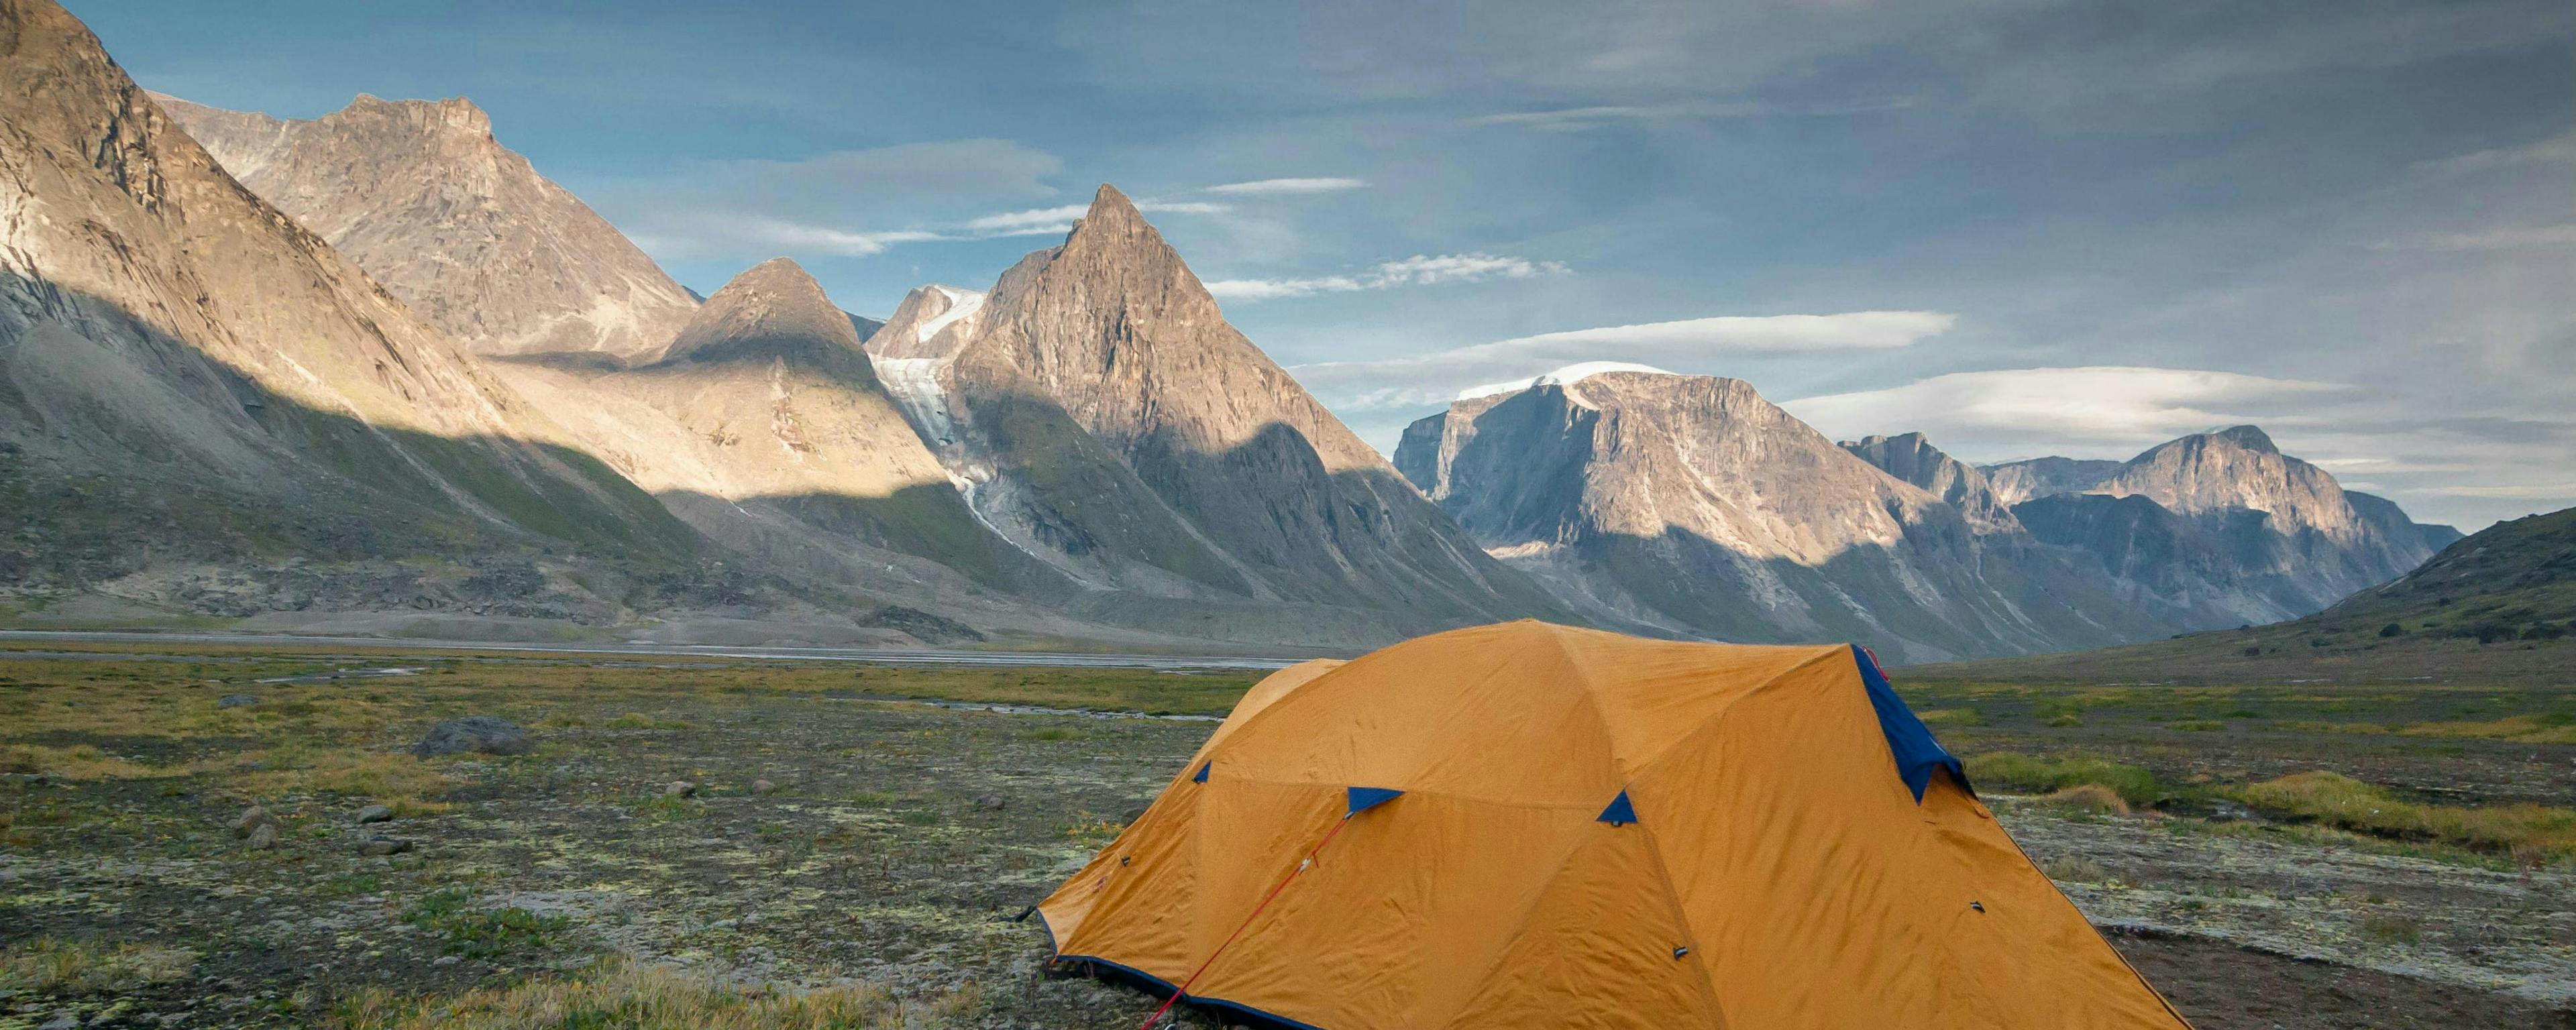 Nord vrai : 6 parcs nationaux canadiens plutôt reculés